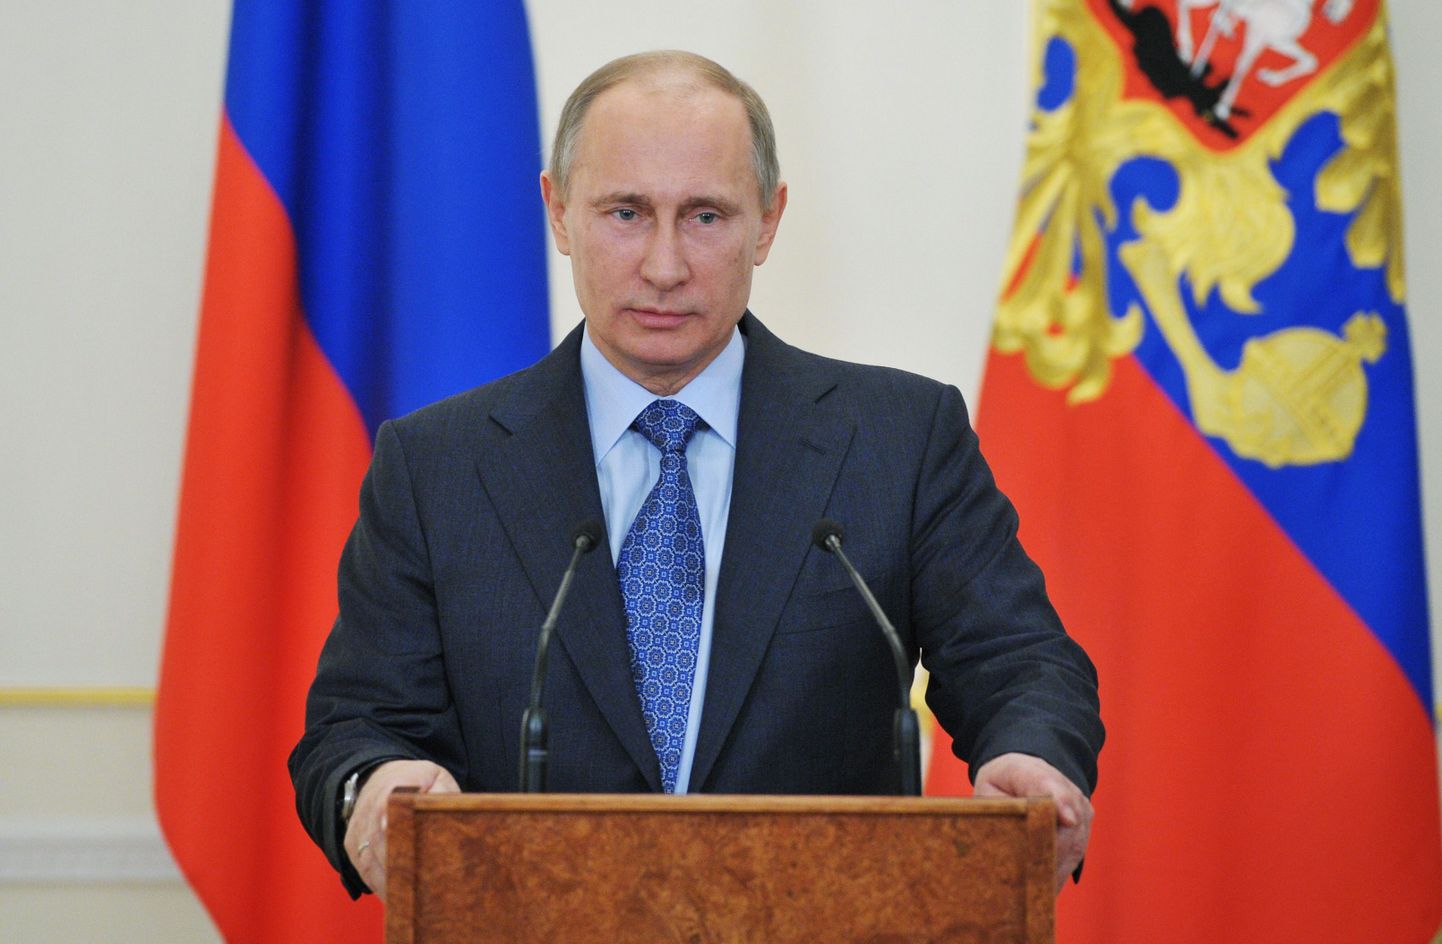 Putini eelnõu eesmärk on suurendada investeeringuid riigi majandusse ja edendada võitlust korruptsiooni vastu.